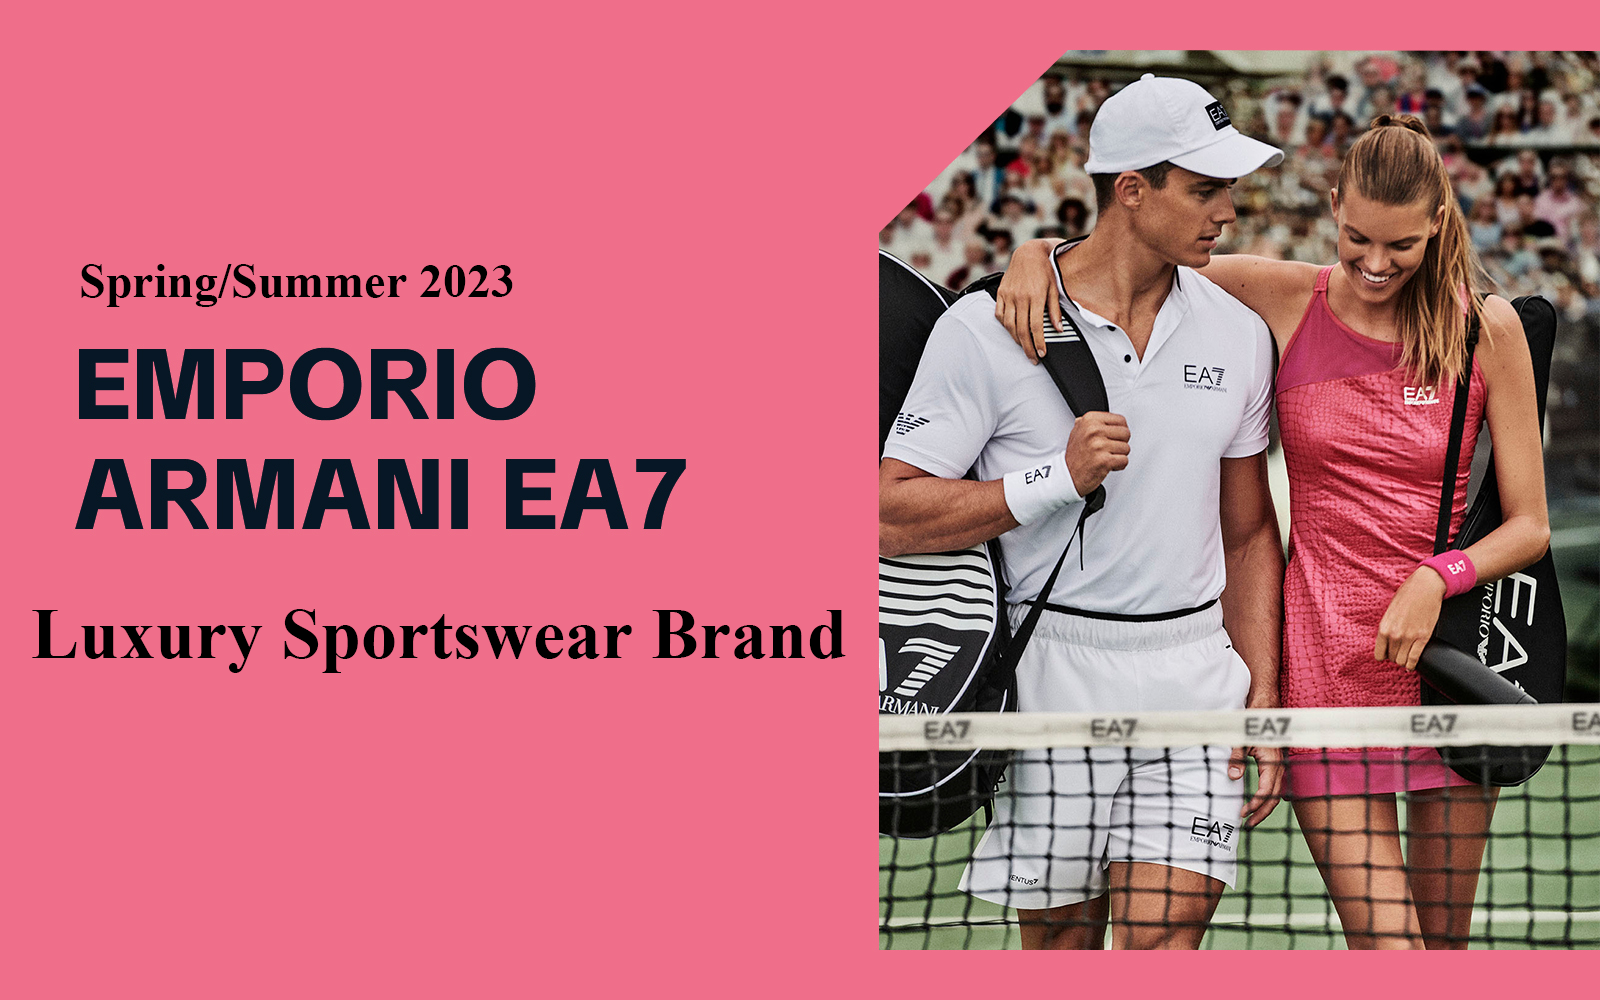 The Analysis of Emporio Armani EA7 The Luxury Sportswear Brand